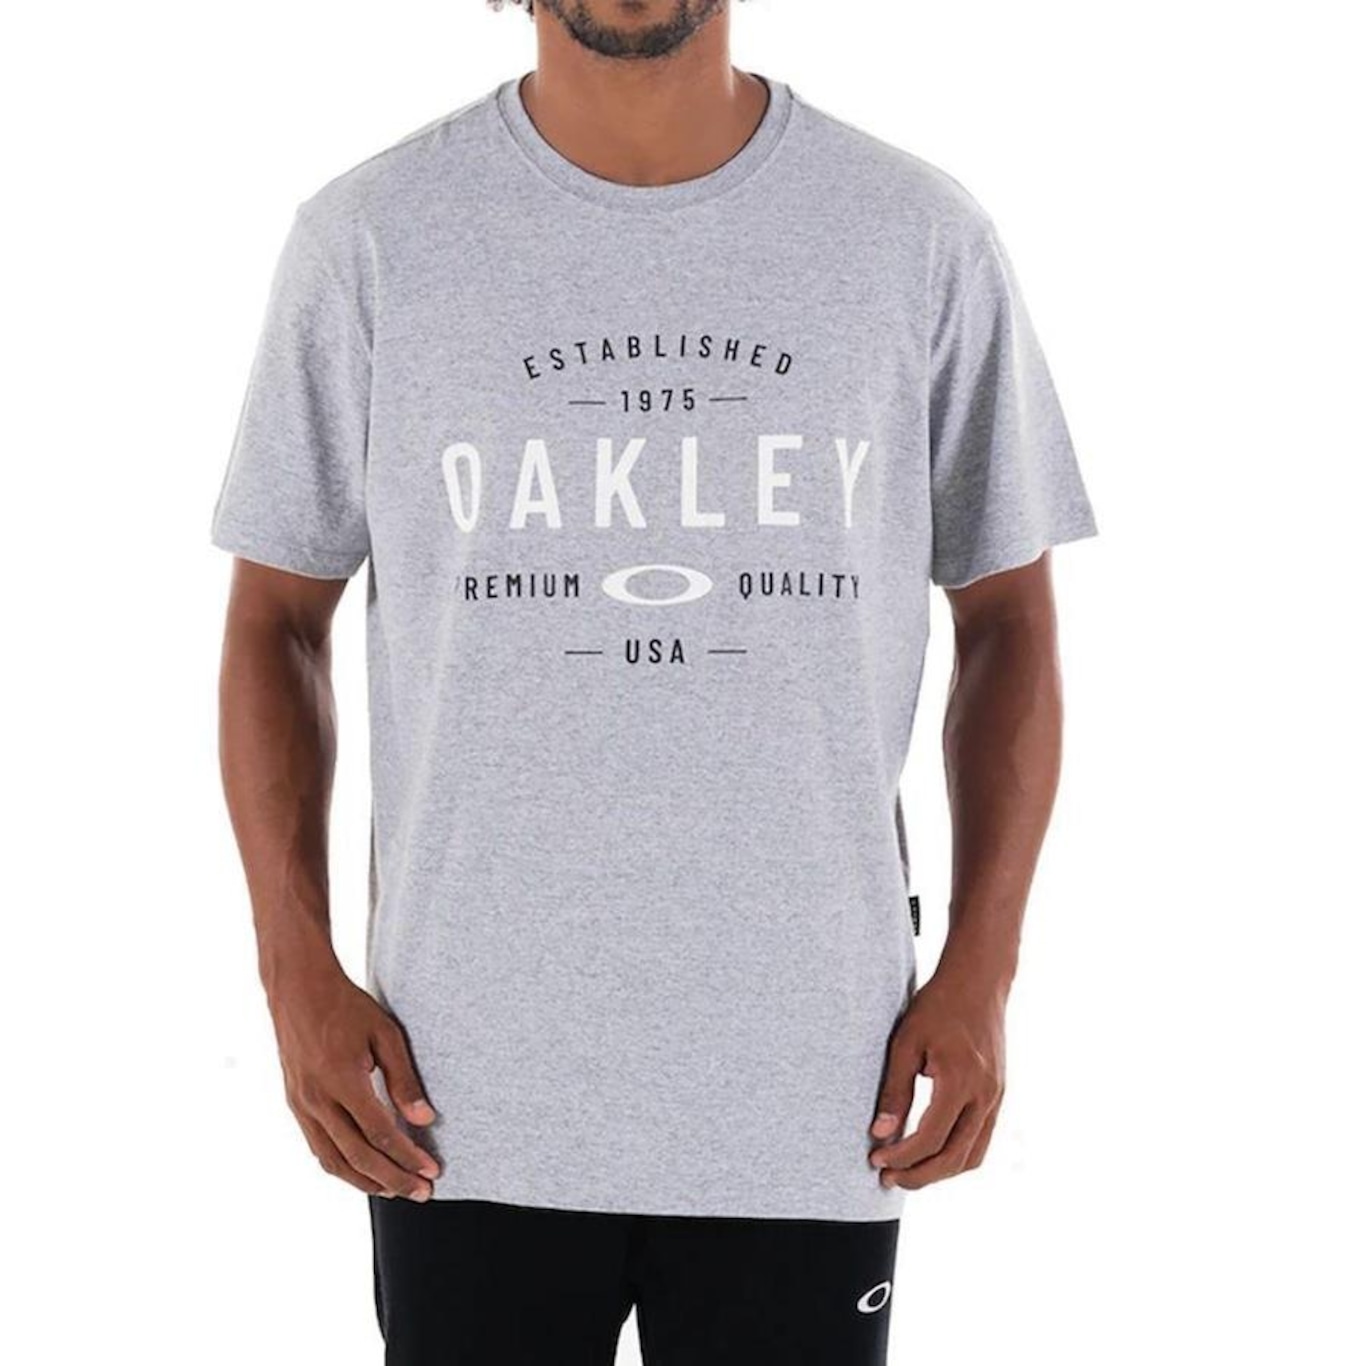 Camiseta Oakley Premium Quality Branca 